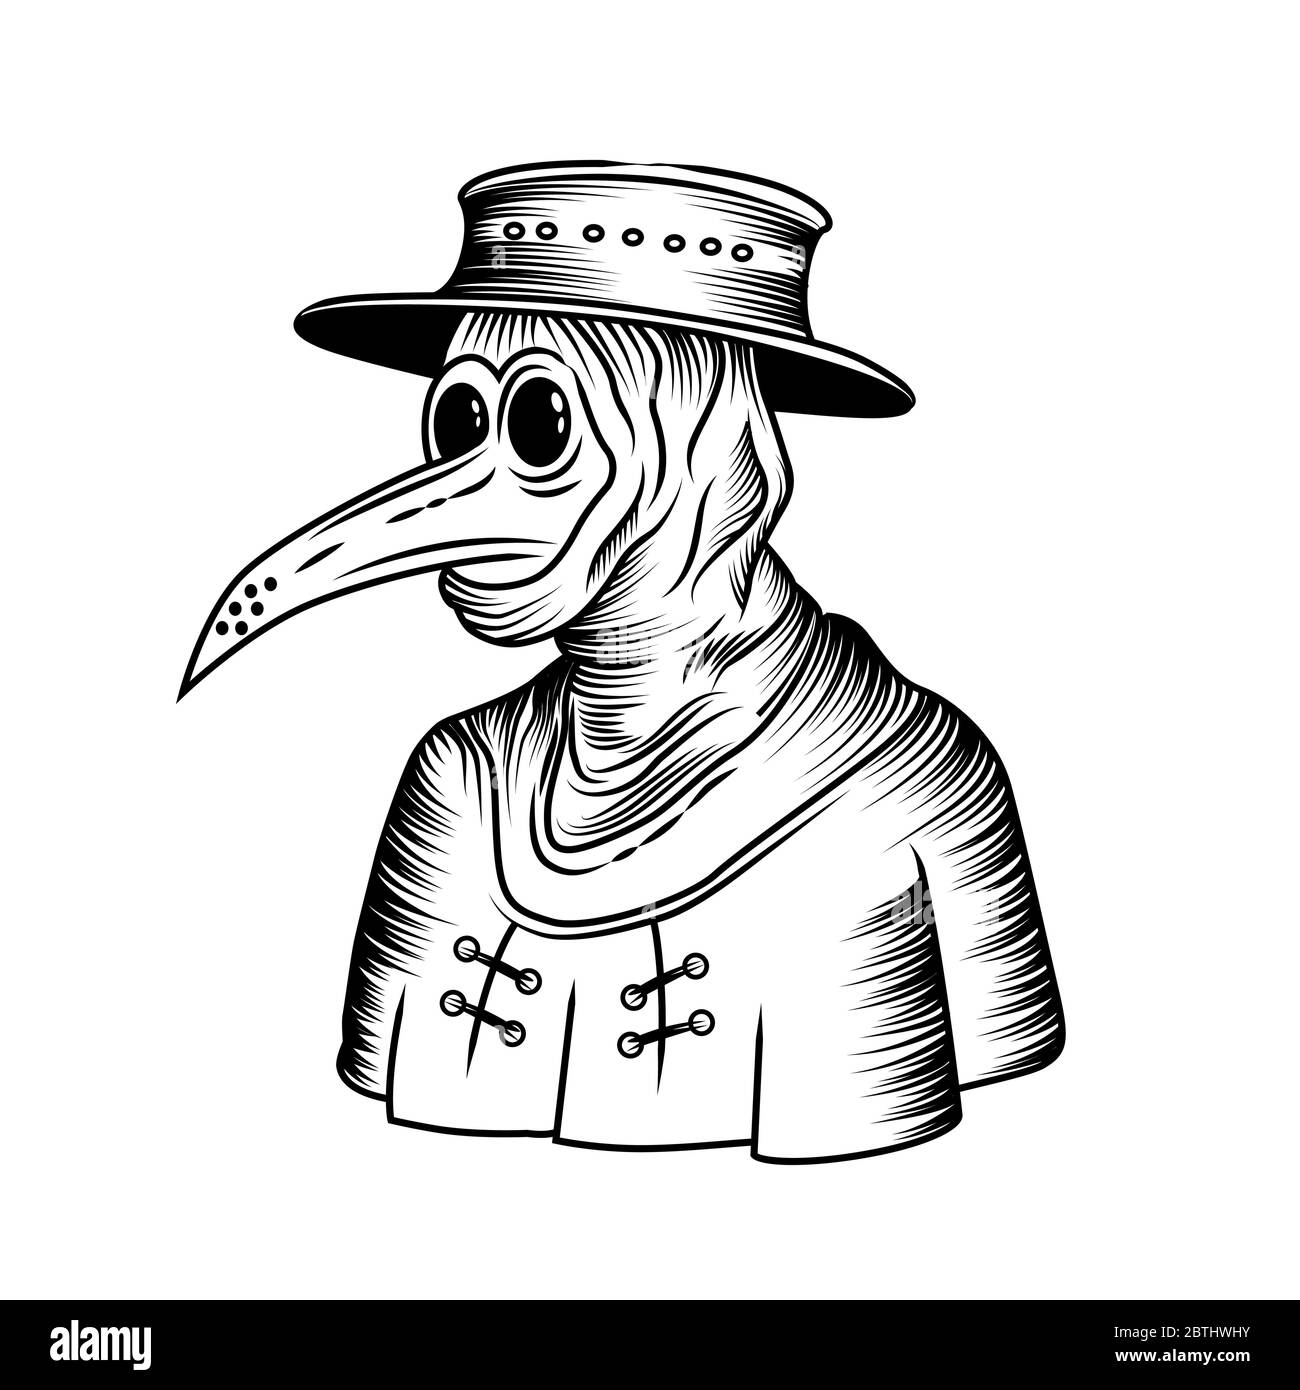 Der Schwarze Tod - eine mittelalterliche Pest Arzt Strichgravur Zeichnung Vektor-Illustration. Stock Vektor